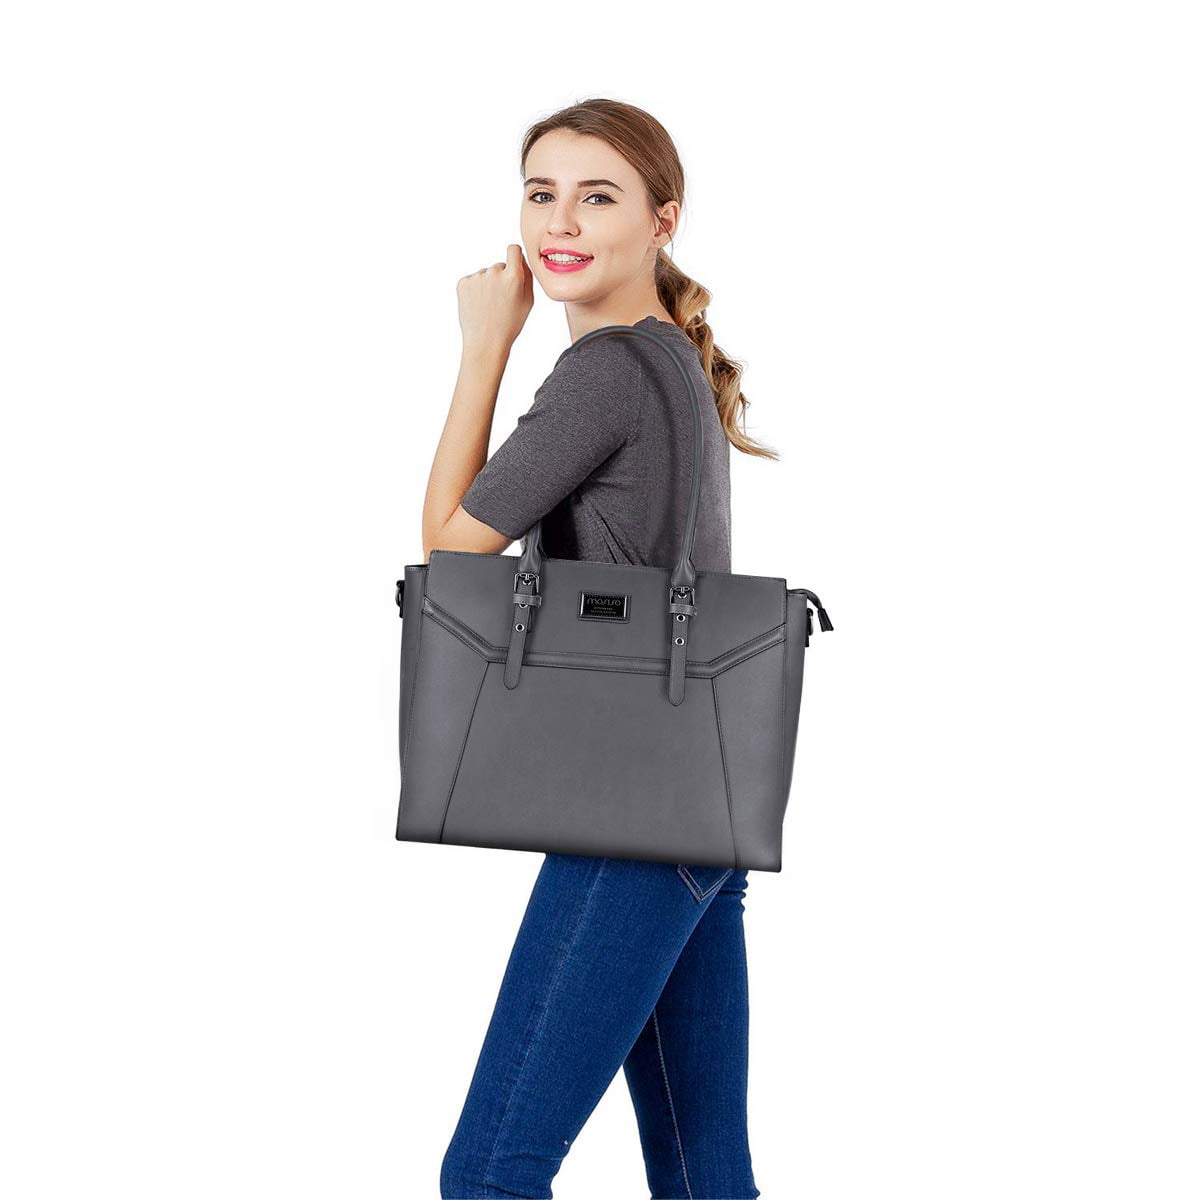 Tote Handbags, School Backpack, Womens Laptop Bag in Black M18403